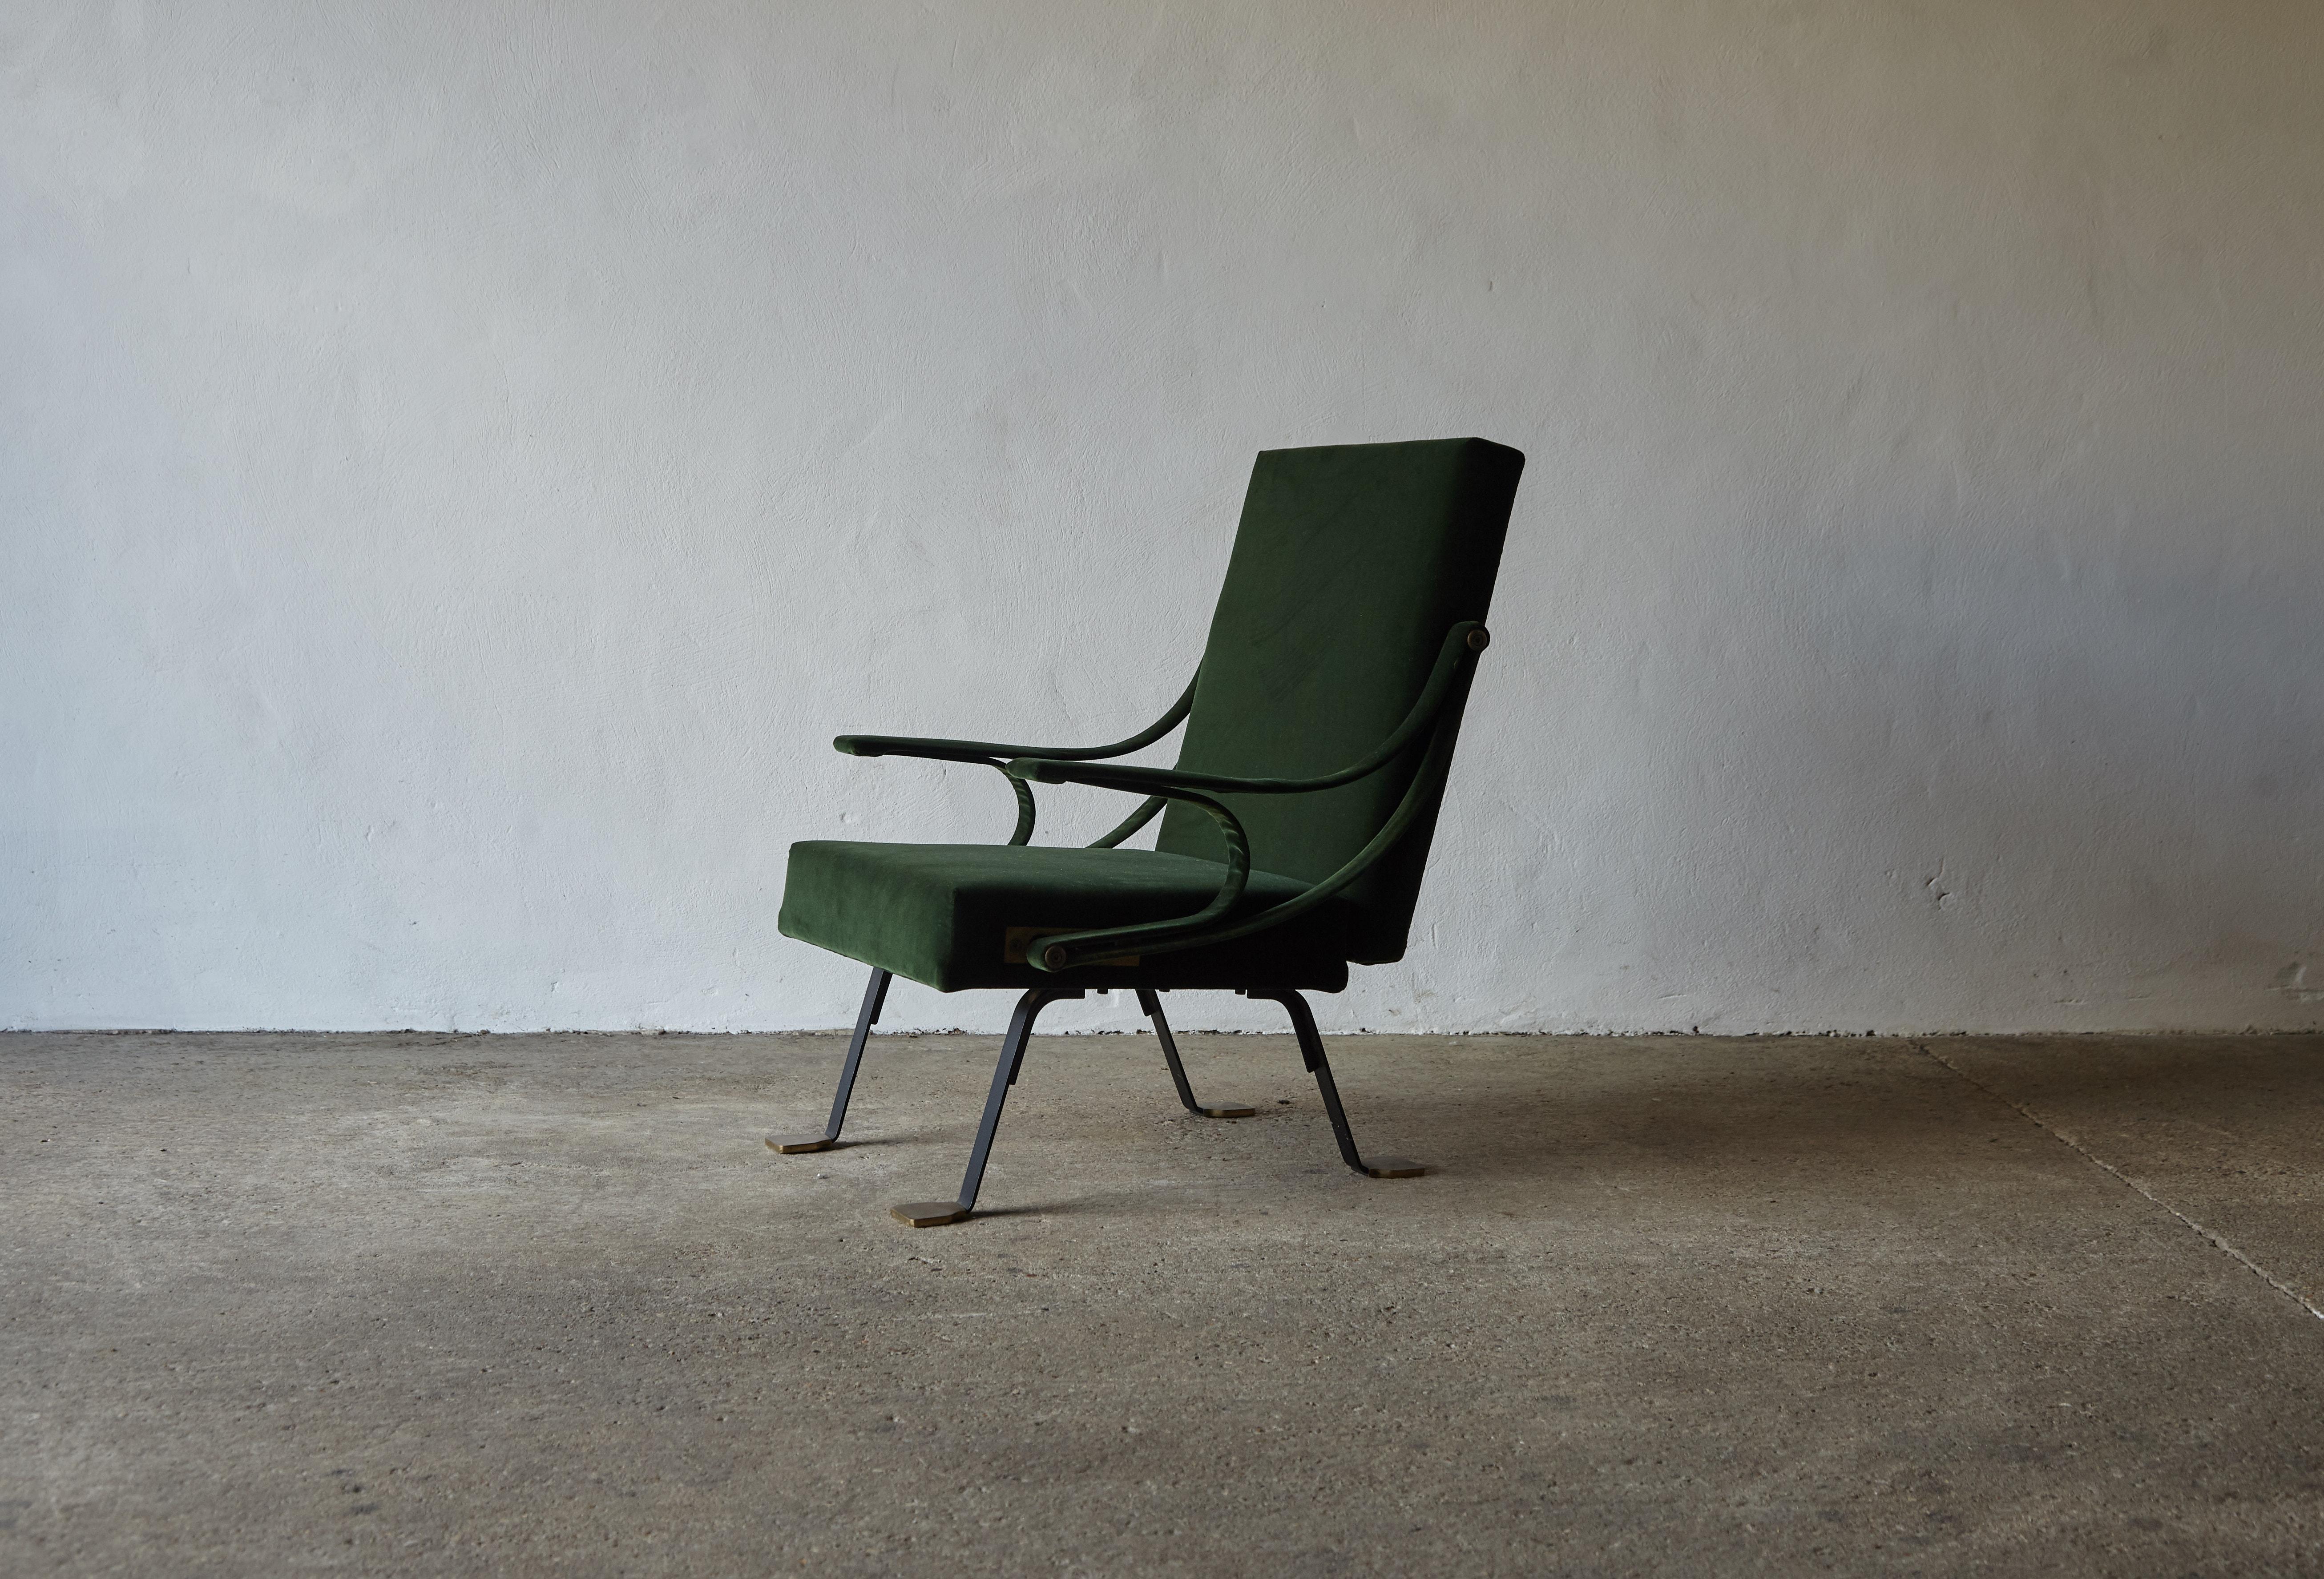 Ein seltener originaler Ignazio Gardella Reclining Digamma Stuhl, entworfen in den späten 1950er Jahren und produziert von Gavina, Italien in den 1960er Jahren. Neu gepolstert mit grünem Samt, Metallgestell im Originalzustand mit patinierten